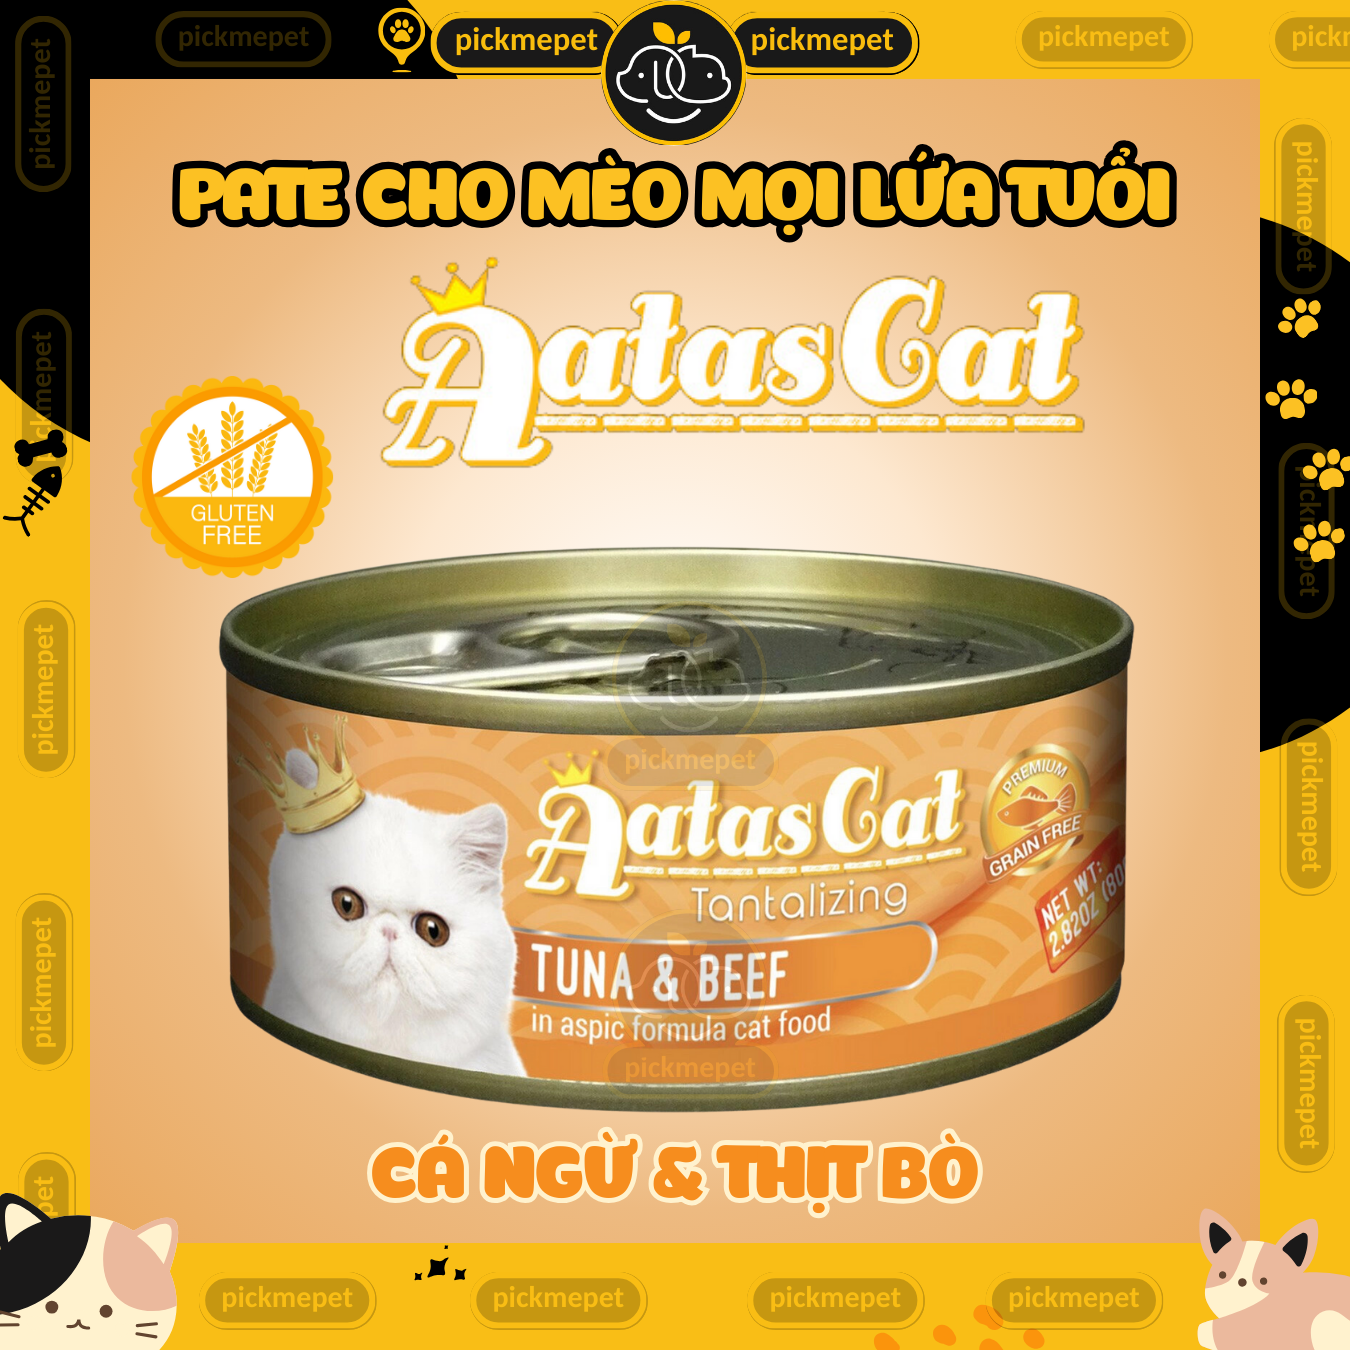 Pate AATAS - Pate ATAS Cho Mèo Mọi Lứa Tuổi (Hộp 80g) - Pate cho Mèo